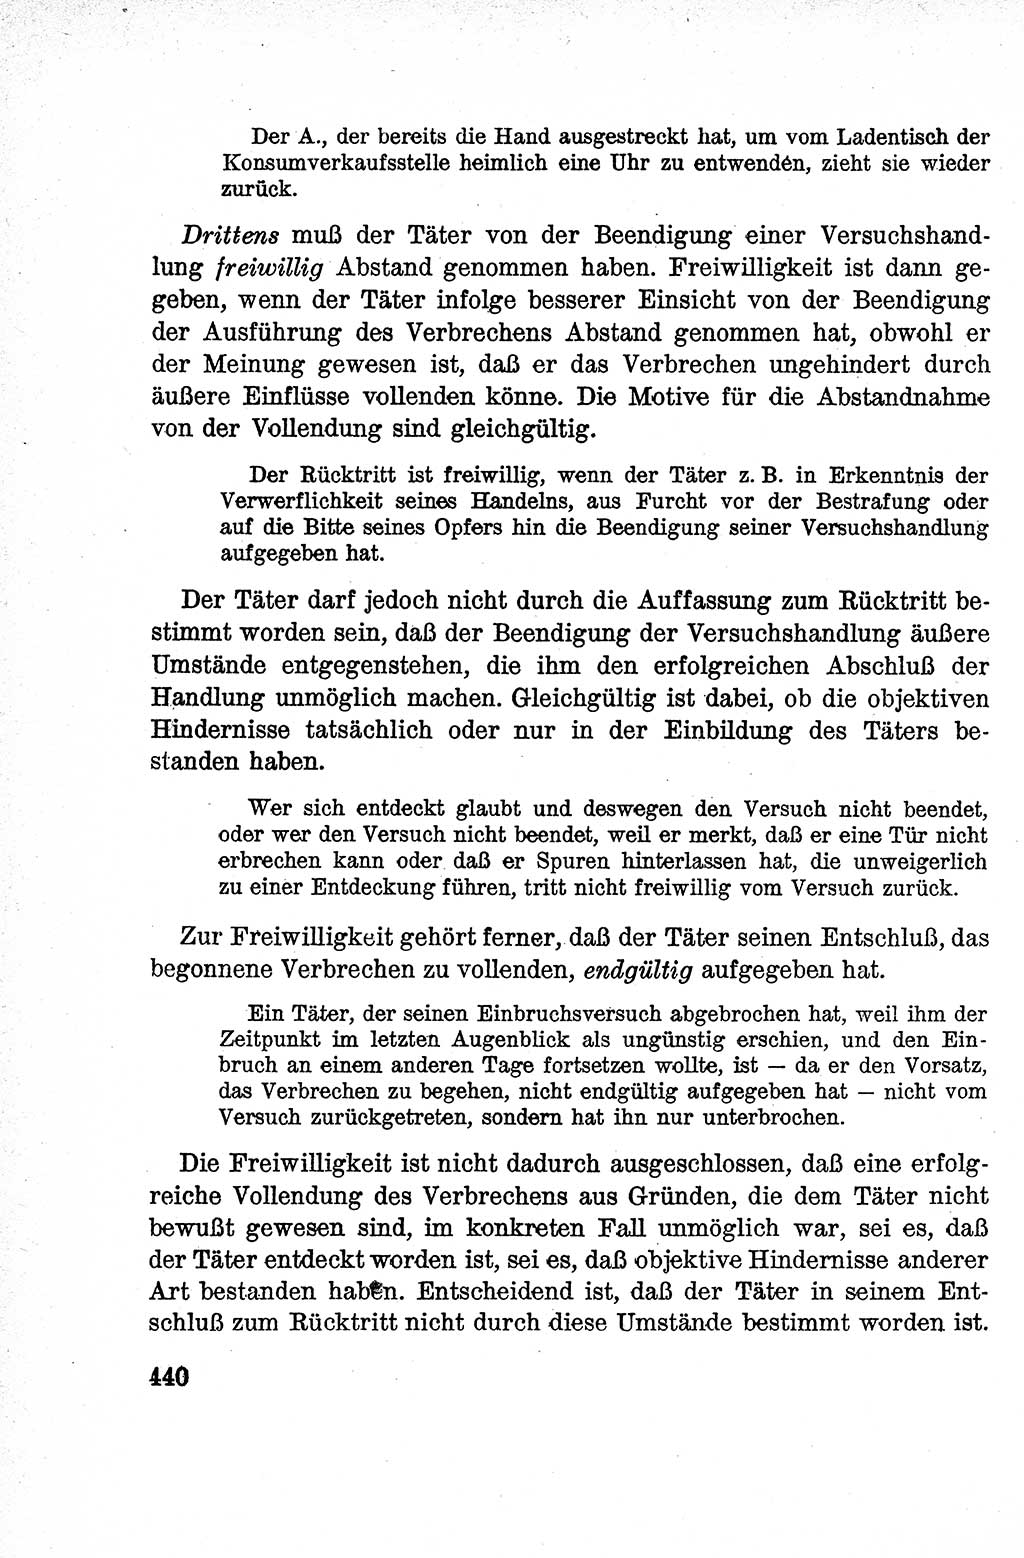 Lehrbuch des Strafrechts der Deutschen Demokratischen Republik (DDR), Allgemeiner Teil 1959, Seite 440 (Lb. Strafr. DDR AT 1959, S. 440)